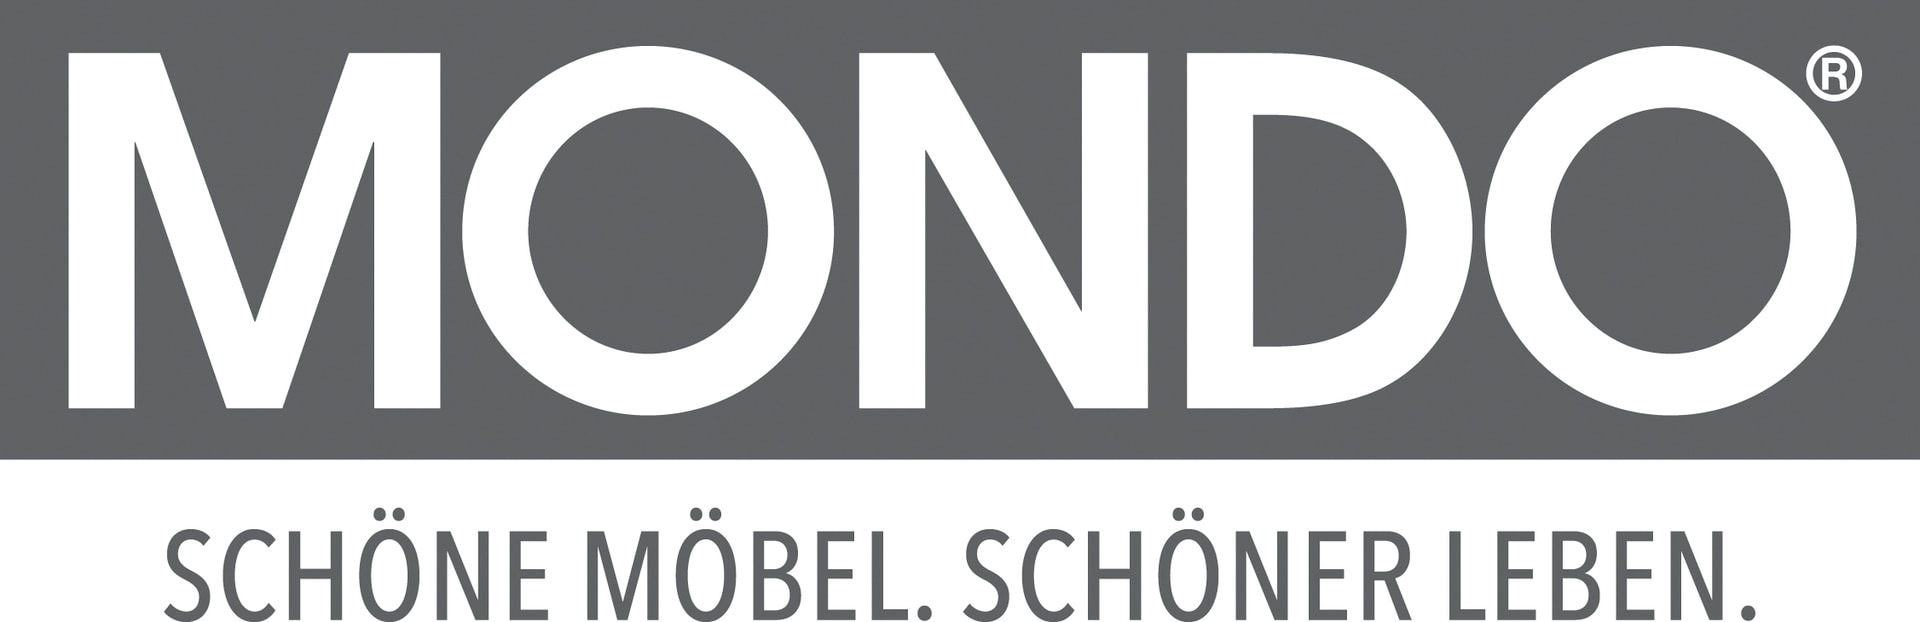 MONDO-logo